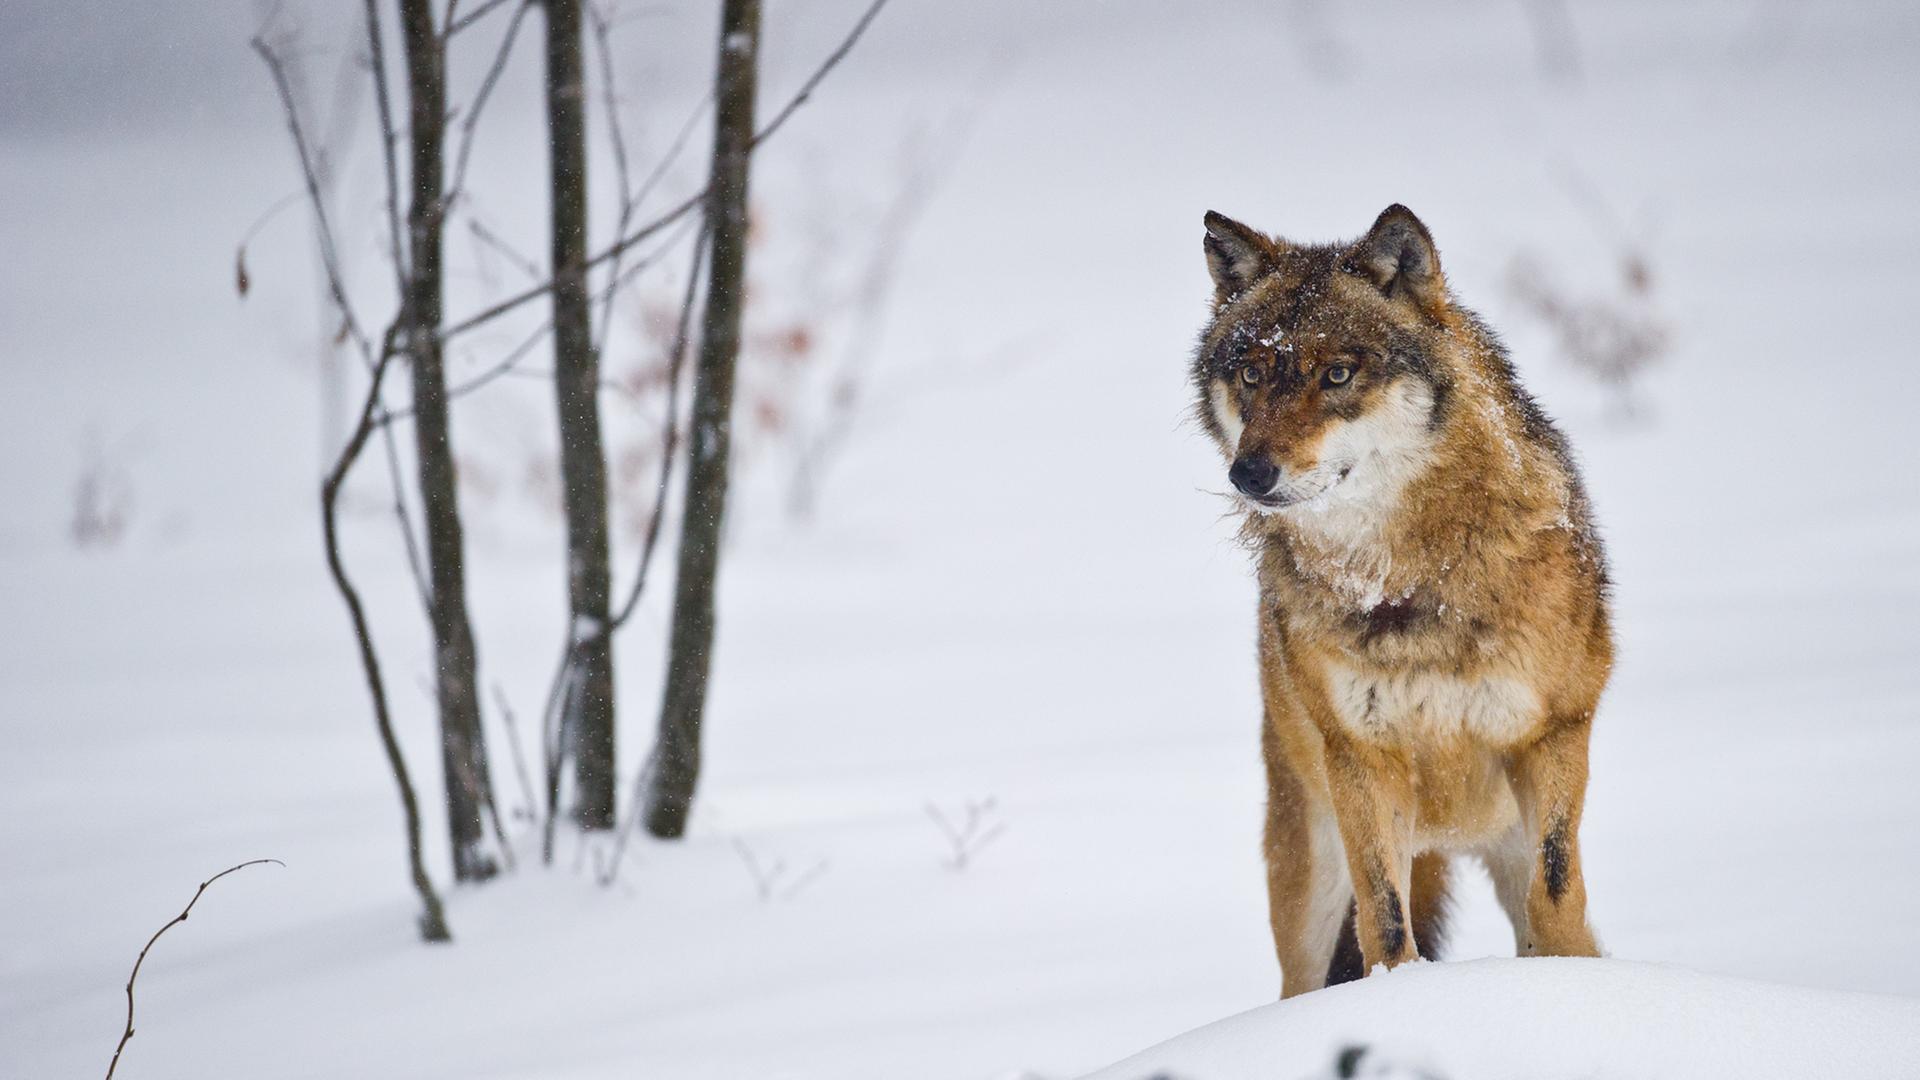 Ein Wolf steht in einer schneebedeckten Landschaft